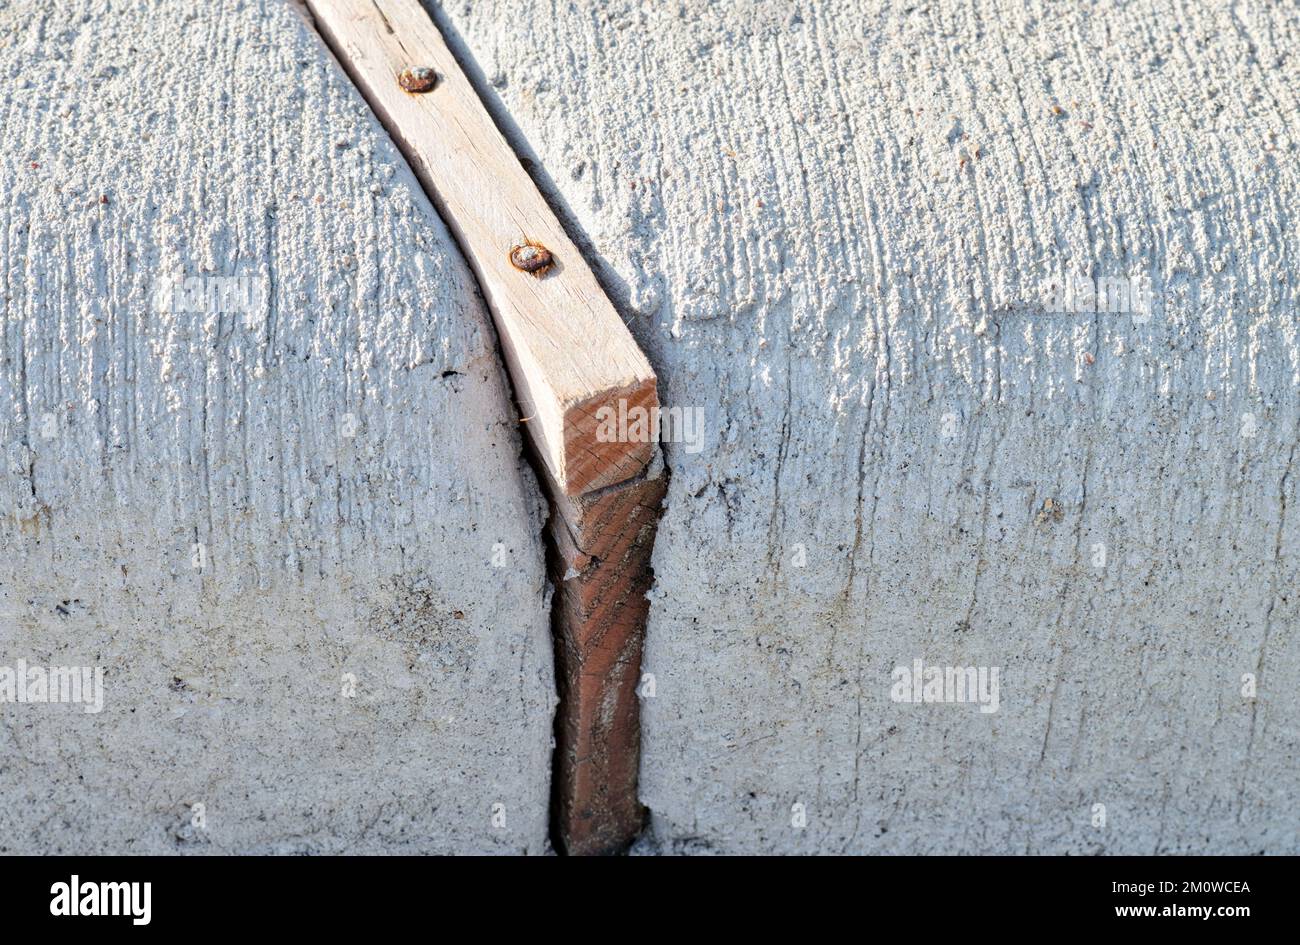 Spreizfugen aus Holz trennen Betonabschnitte einer Bordsteinkante, um Belastungen durch wärmebedingte Ausdehnung zu absorbieren. Nahaufnahme auf Bodenhöhe. Stockfoto